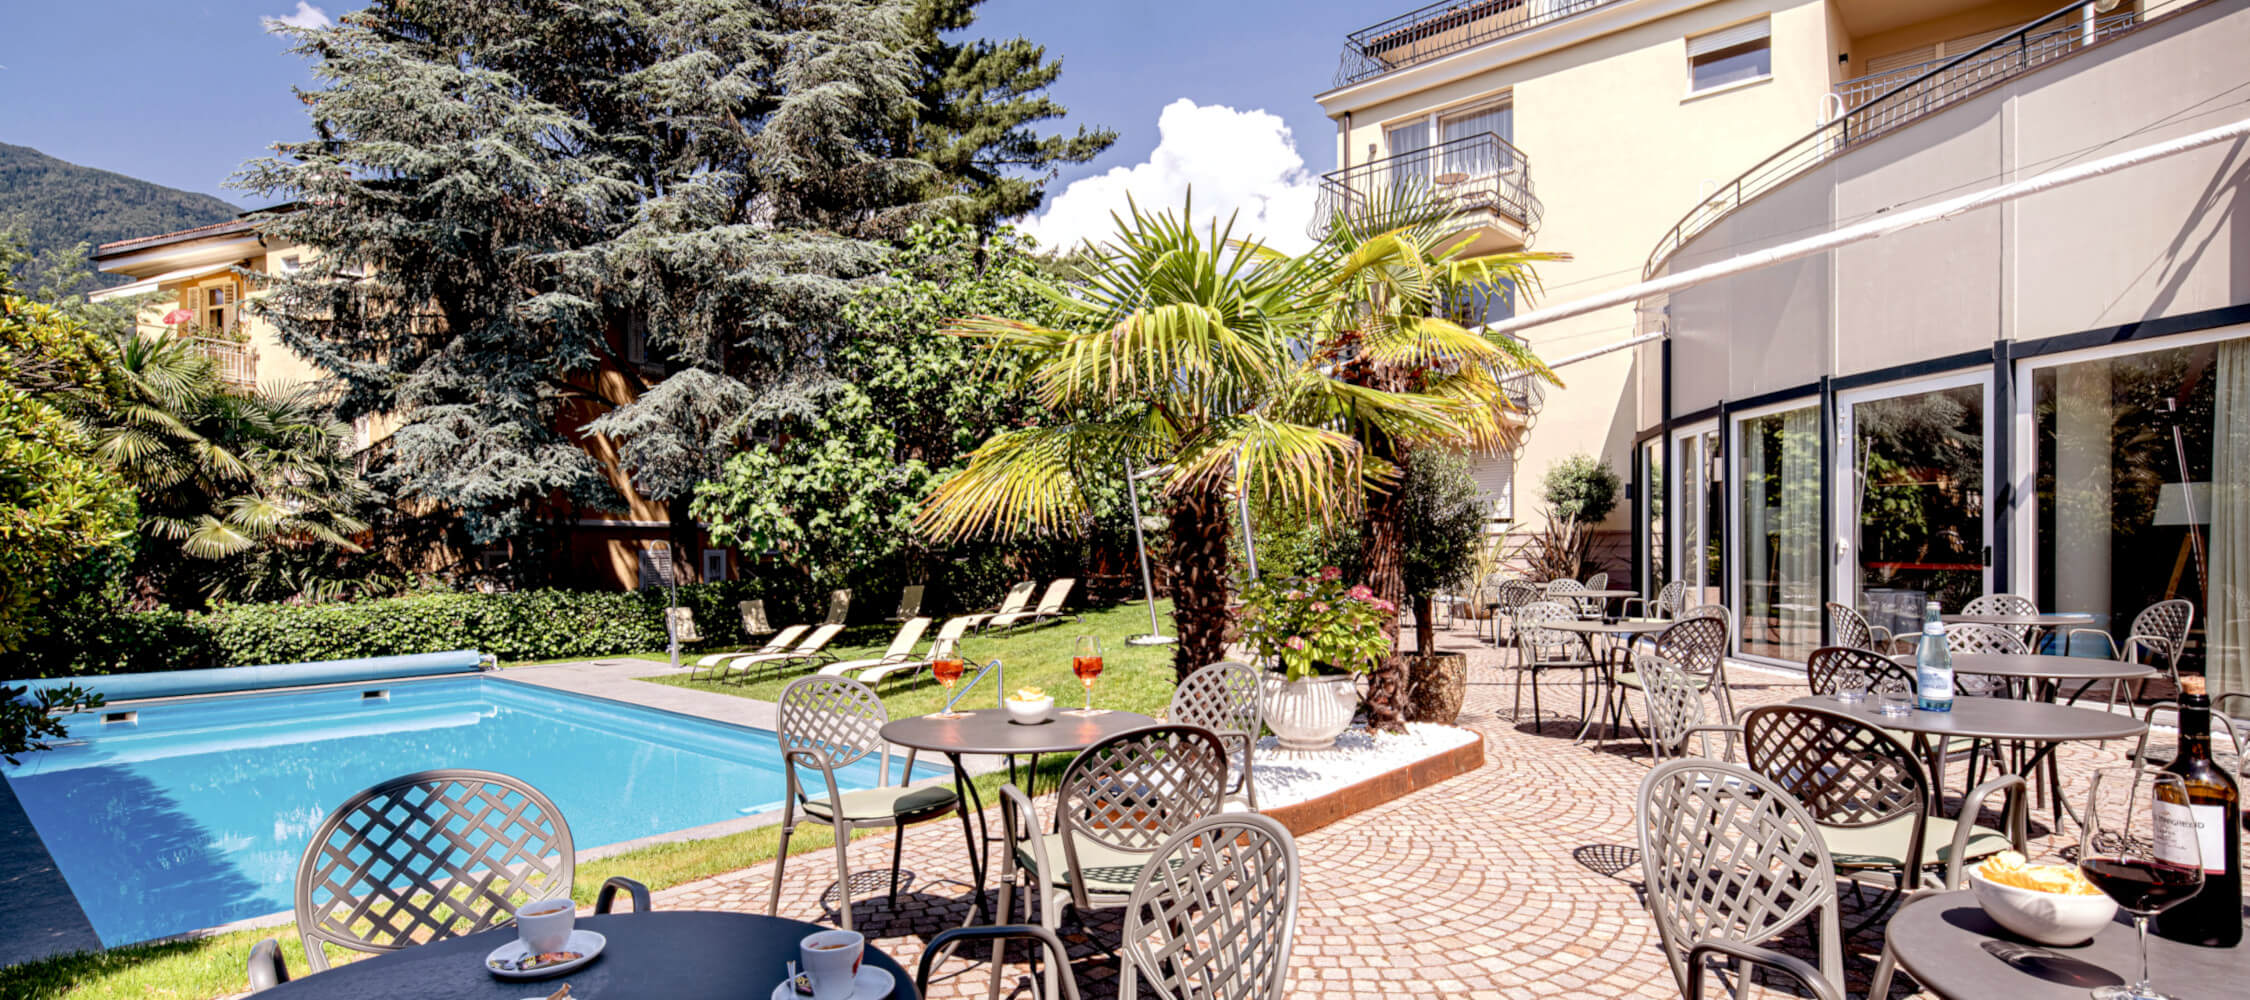 Hotel-Villa-Laurus-Merano-Aussen-Pool-Terrasse-FlorianBusch-9_2250x1000